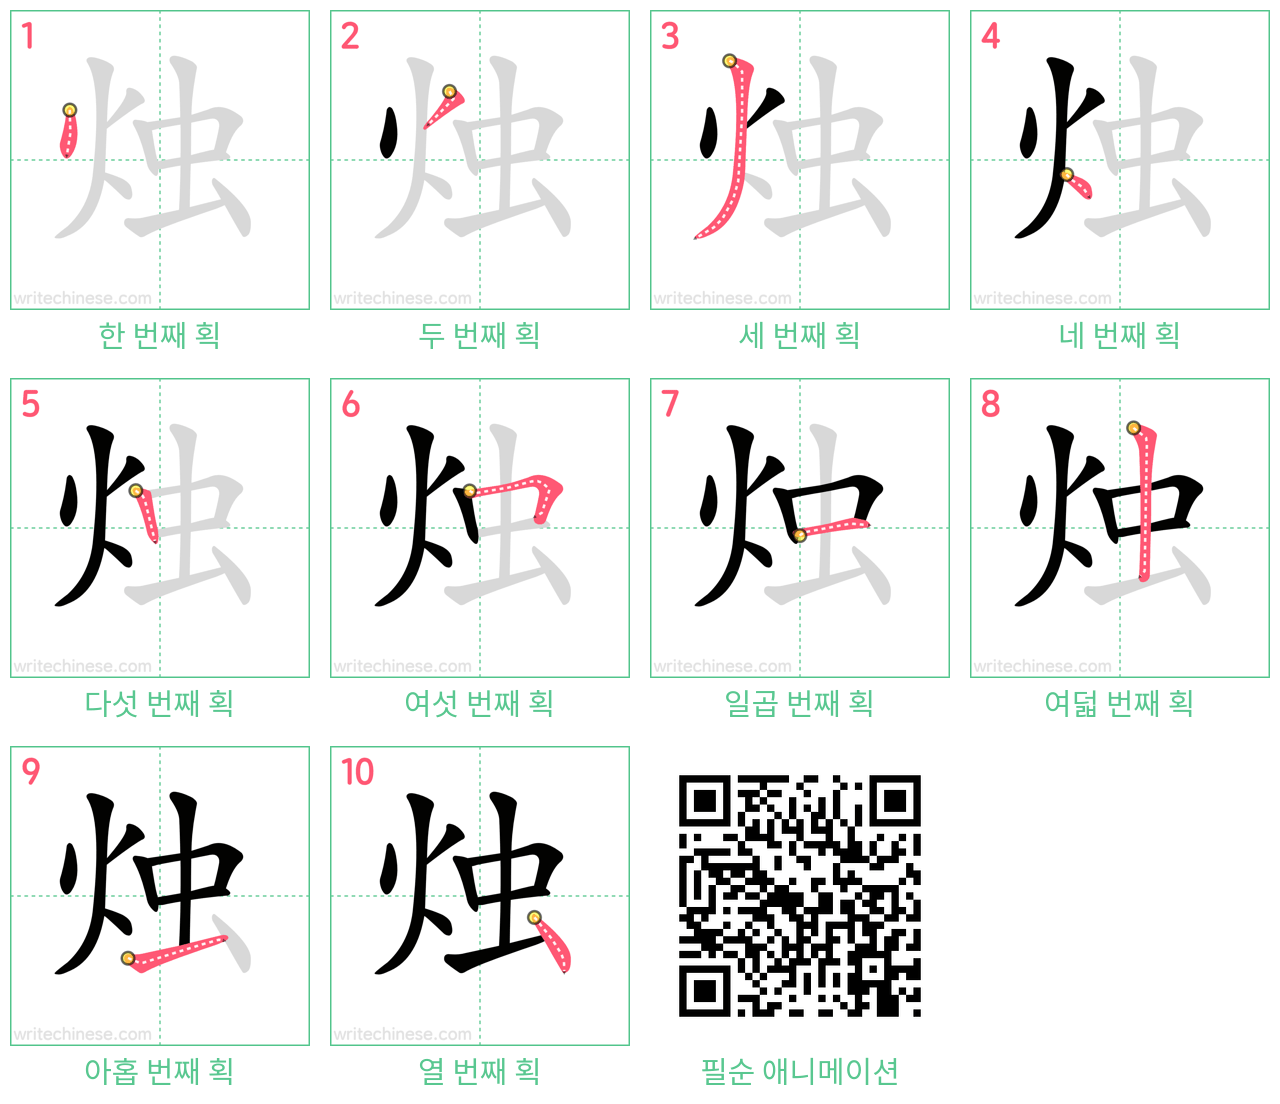 烛 step-by-step stroke order diagrams